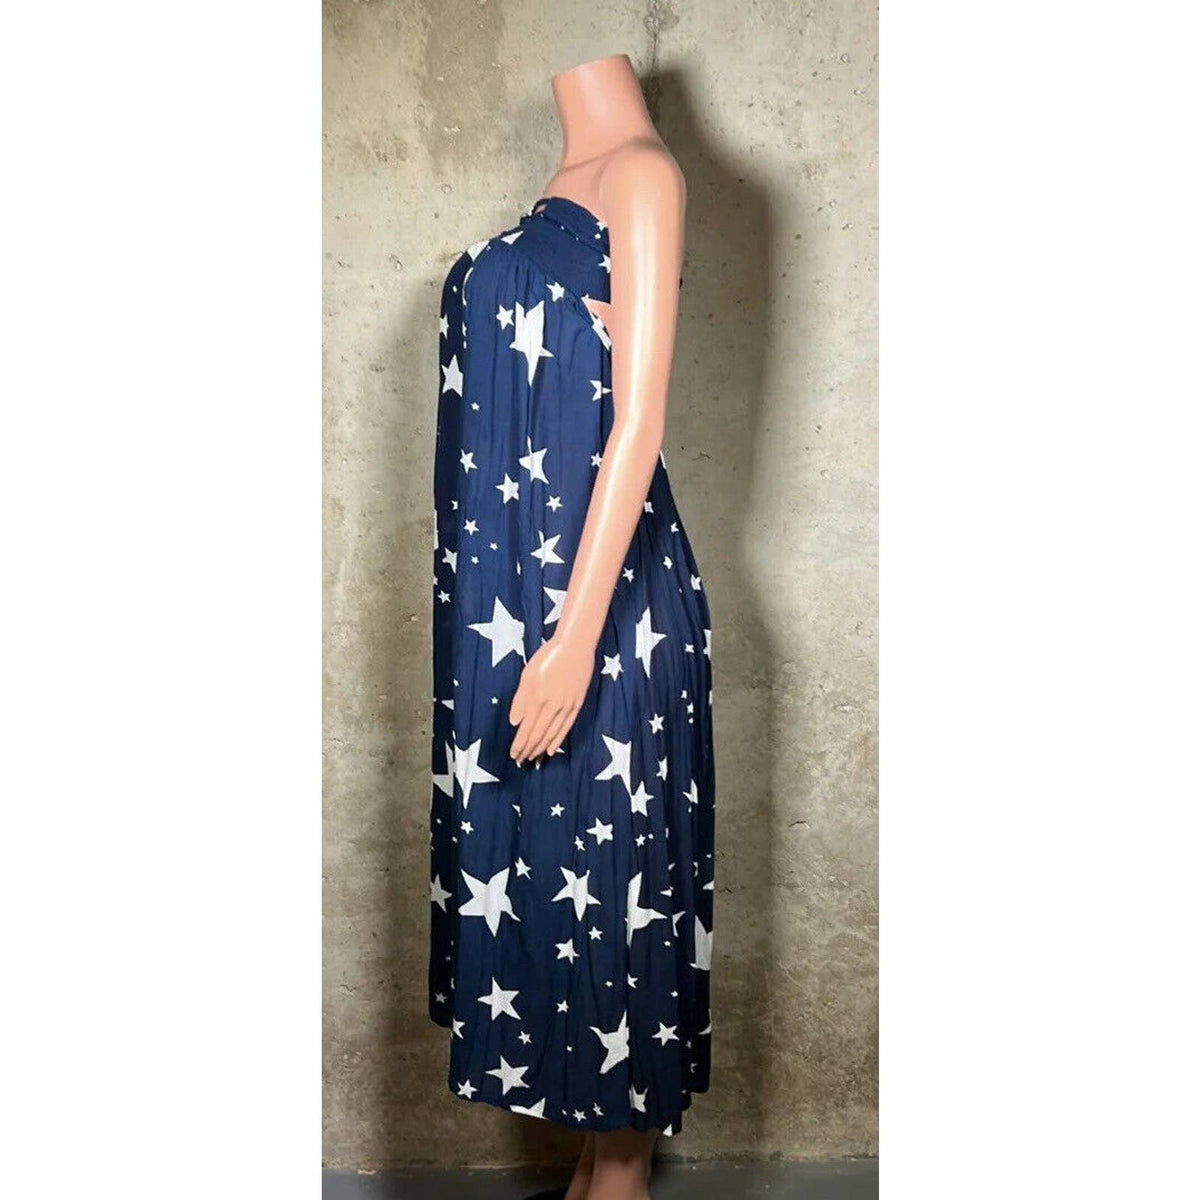 Indah Blue Star Strapless Dress Sz. XS